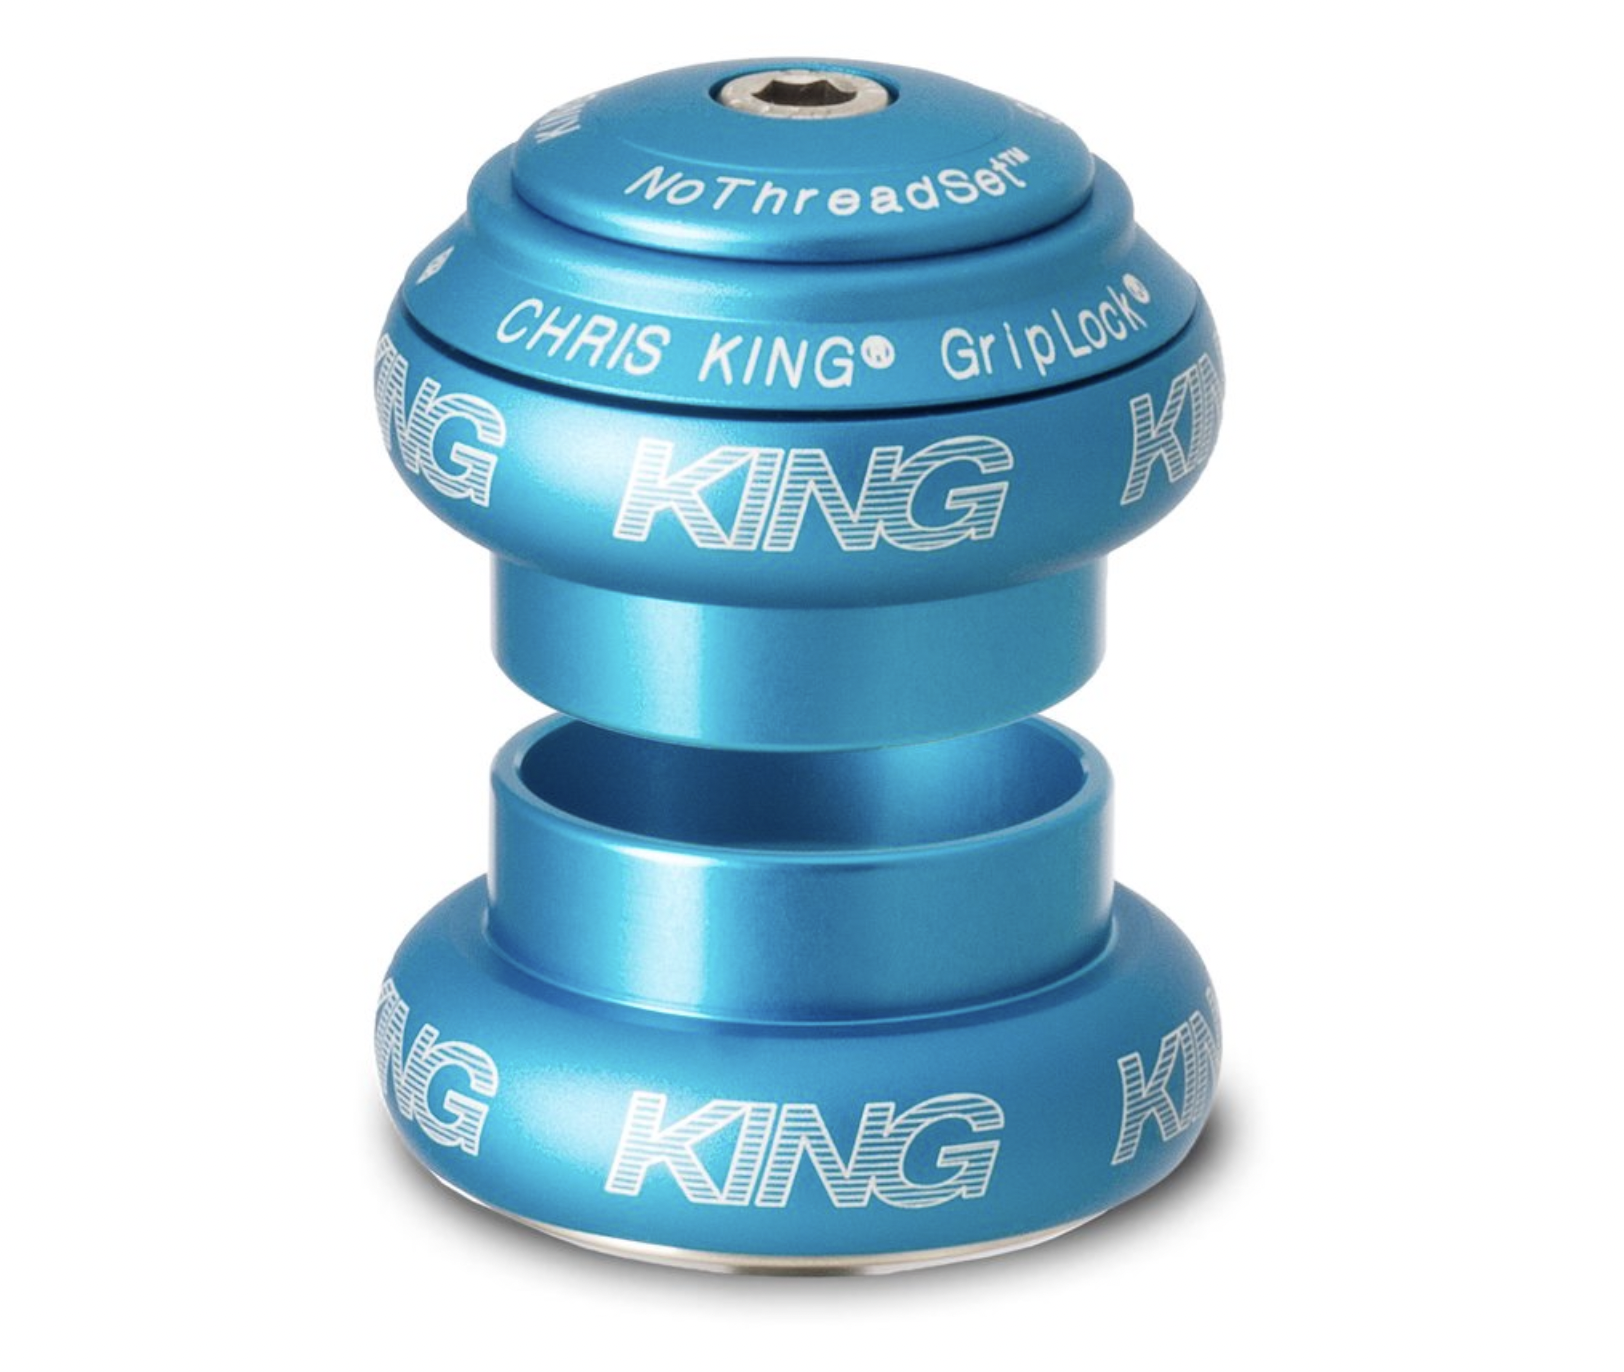 Chris King Chris King NoThreadSet Headset 1-1/8 Matte Turquoise